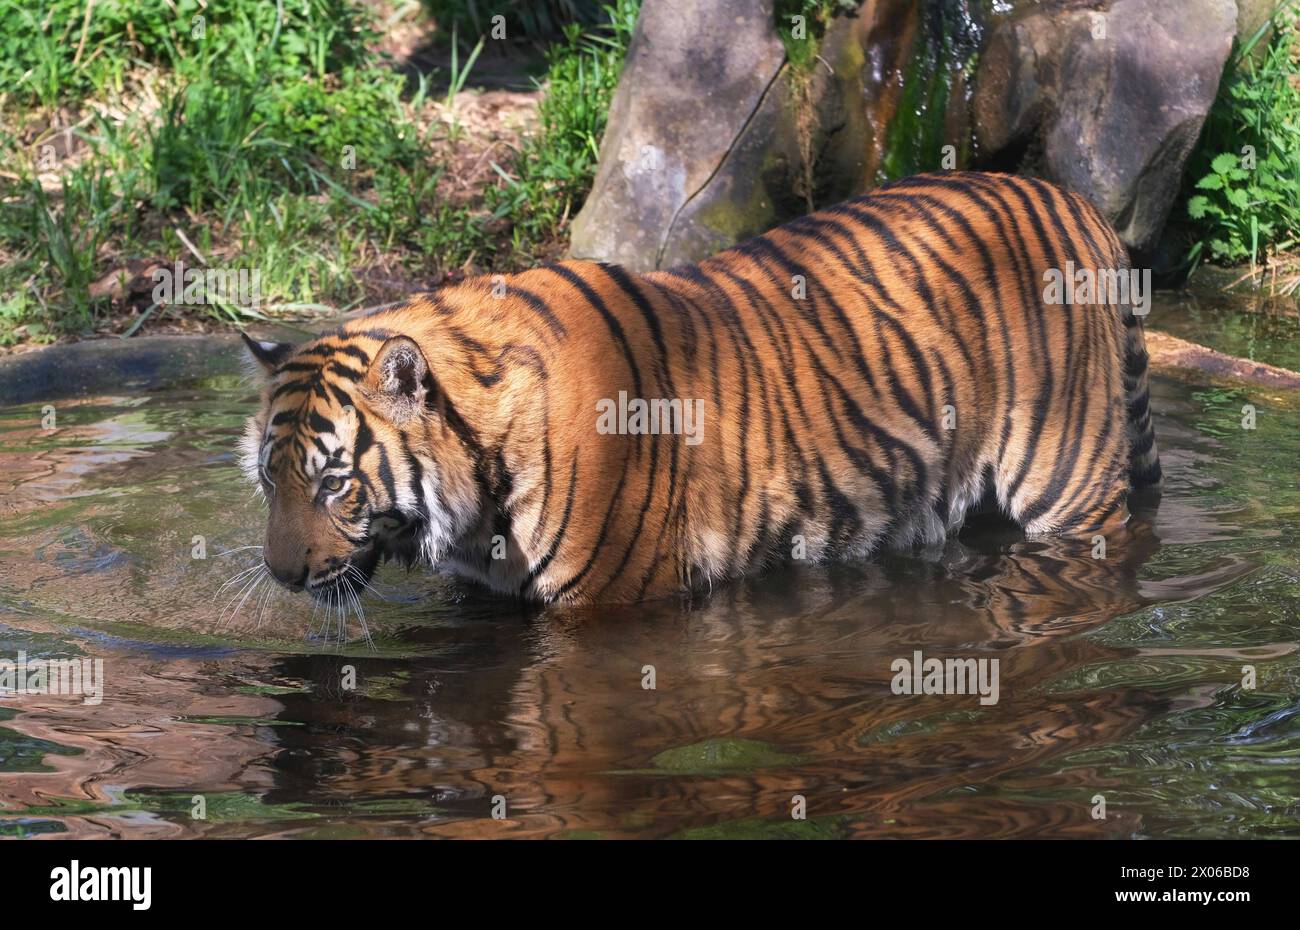 Sumatra-Tiger im Zoo Krefeld in verschiedenen Aktionen. Tiger *** Sumatran tigers at Krefeld Zoo in various tiger activities Stock Photo